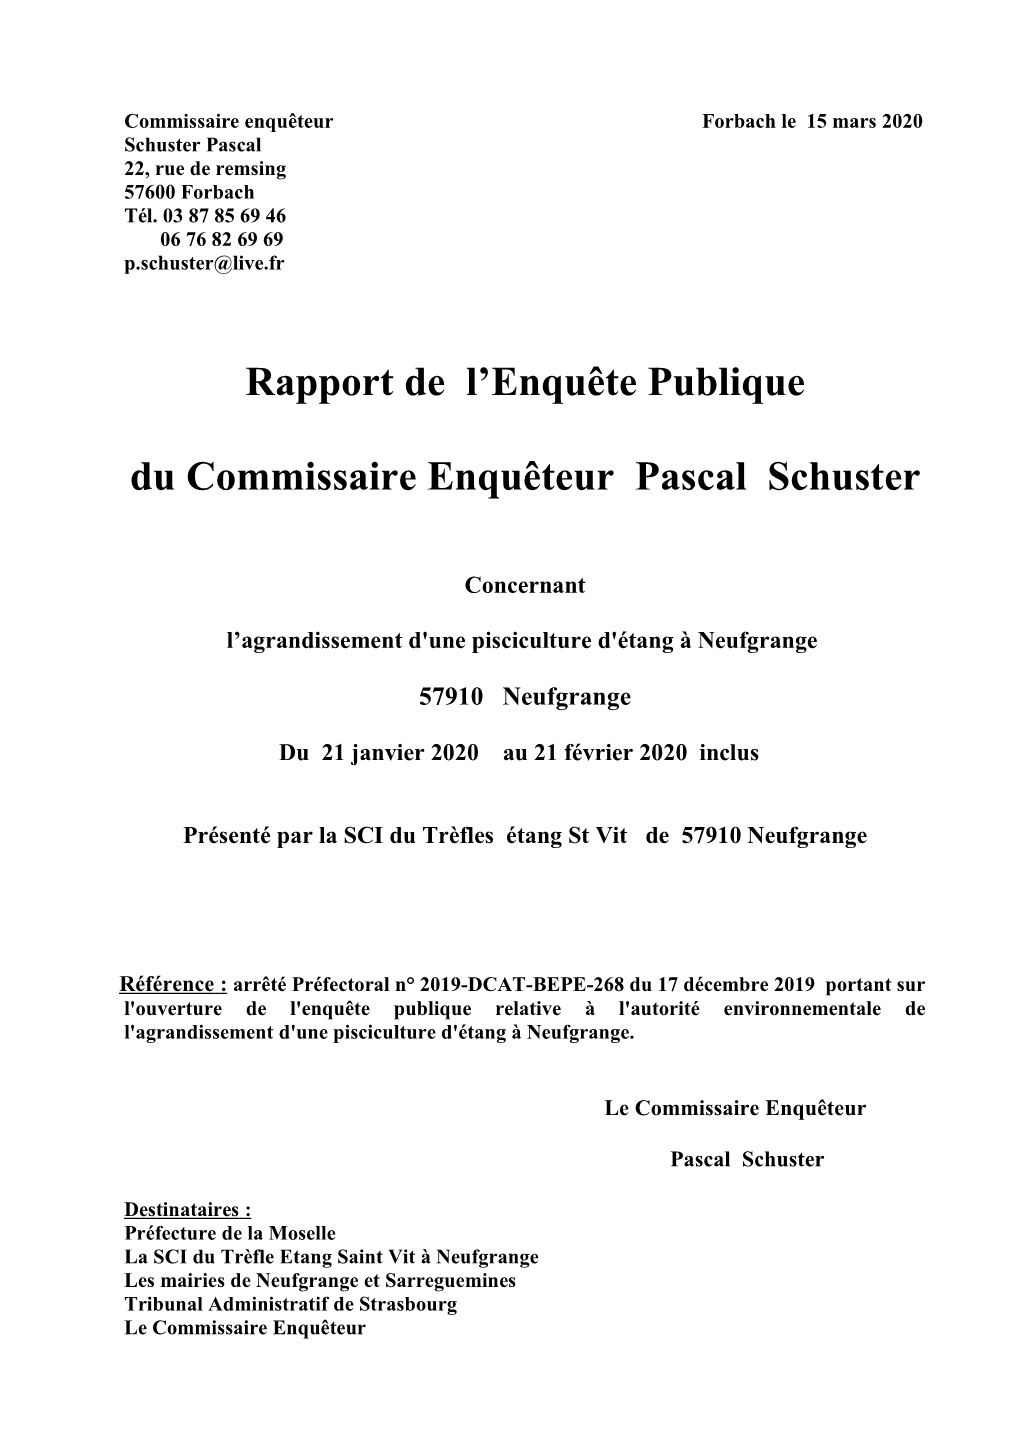 Rapport De L'enquête Publique Du Commissaire Enquêteur Pascal